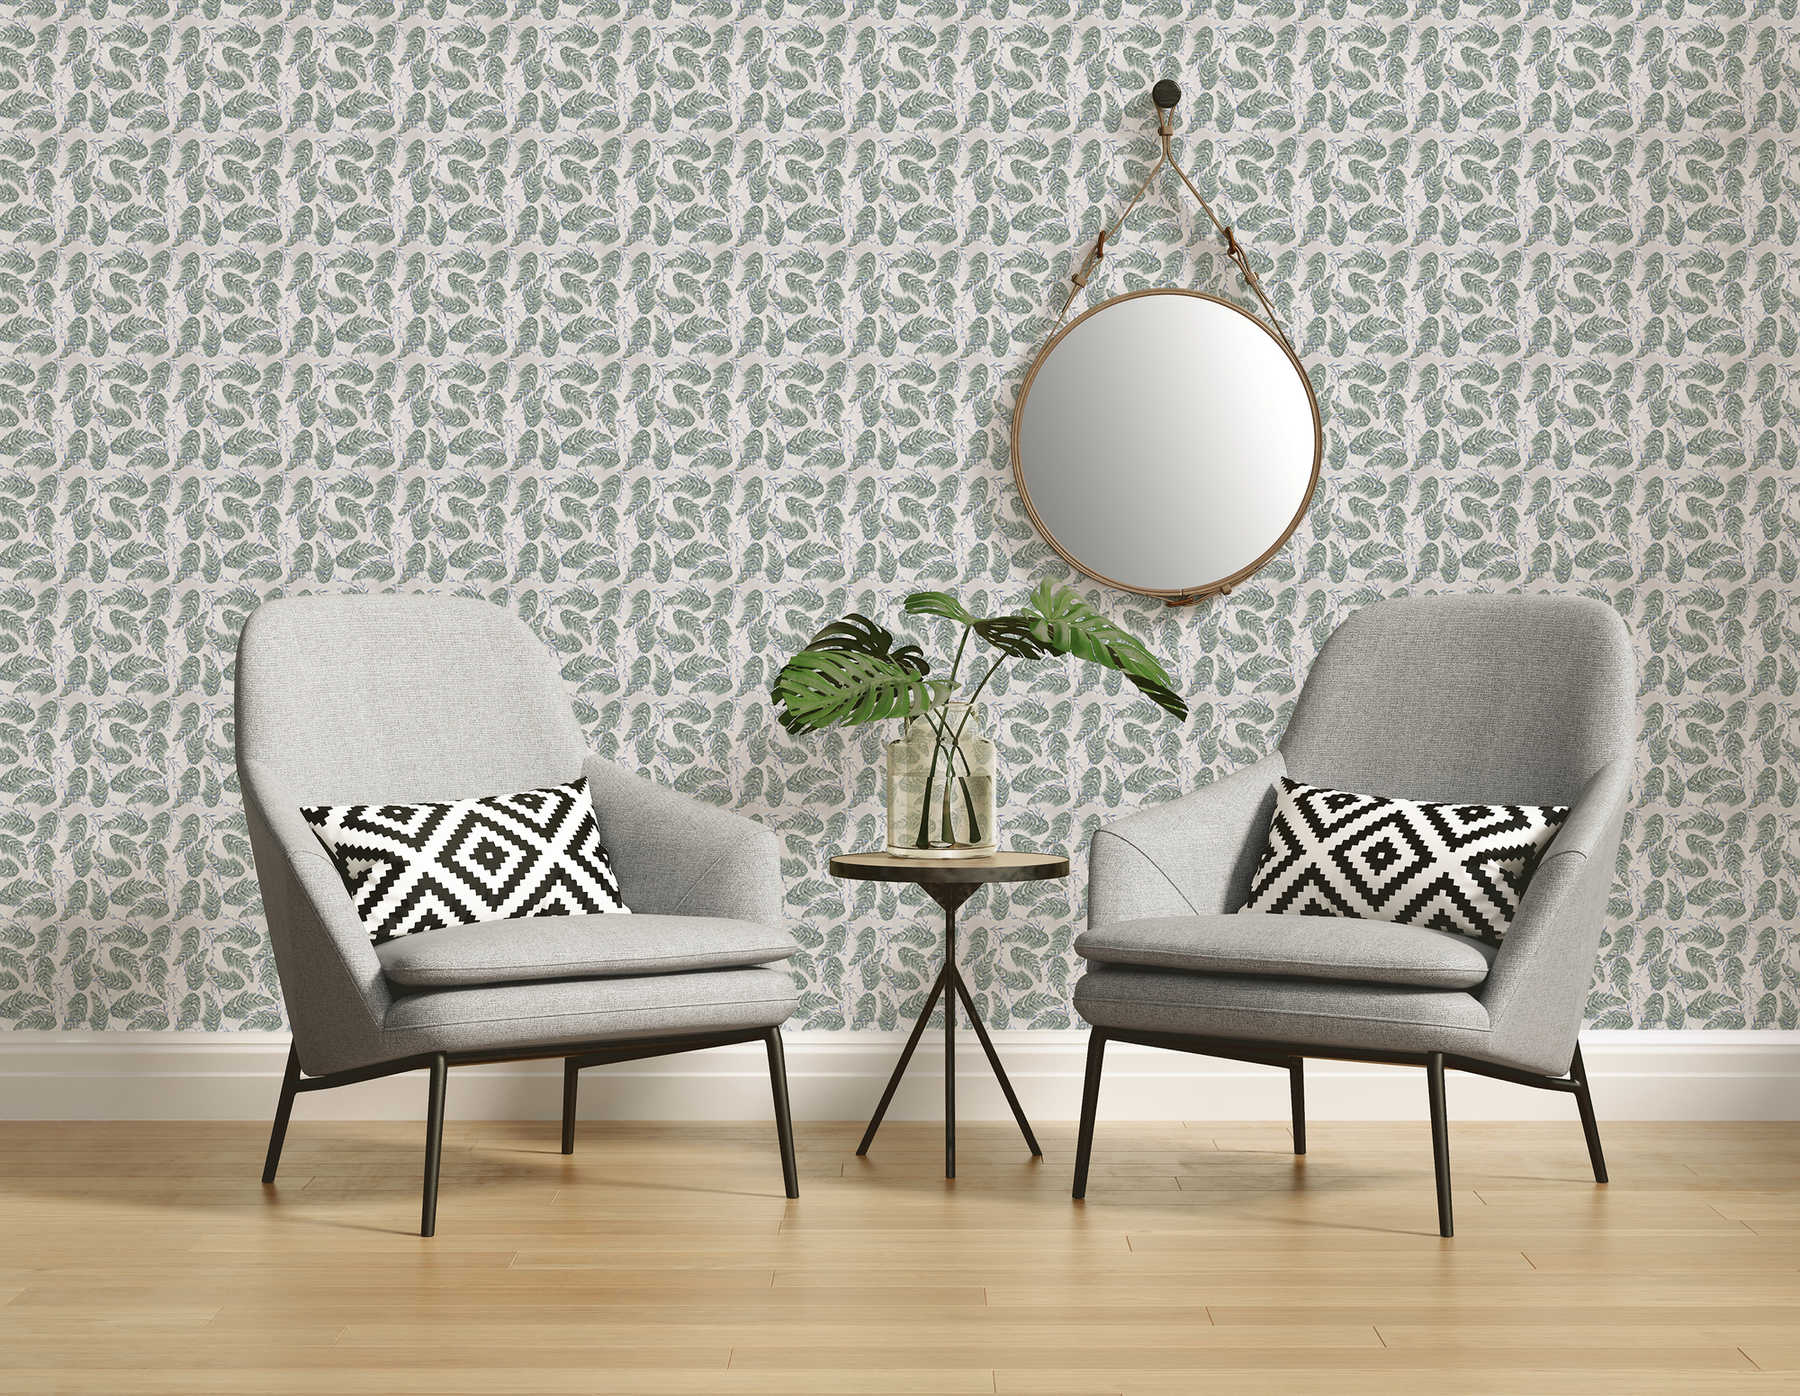             Design Fototapete mit floralem Muster in Grau und Grün auf Premium Glattvlies
        